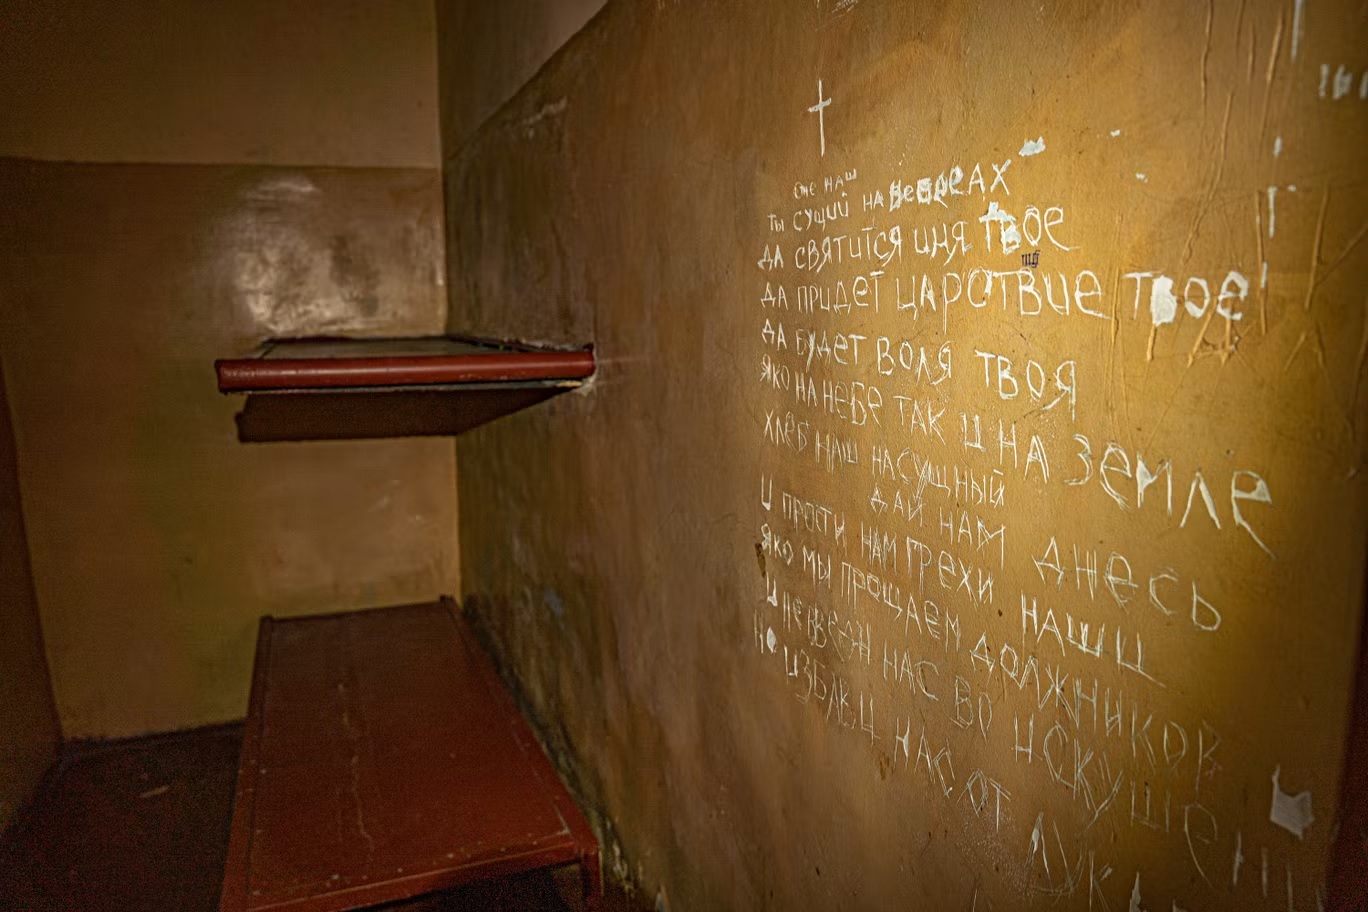 كلمات الصلاة الربانية المسيحية محفورة على جدار زنزانة أولكسندر الصغيرة حيث تم احتجازه وتعذيبه على مدى أسابيع في بالاكليا (بيل ترو)